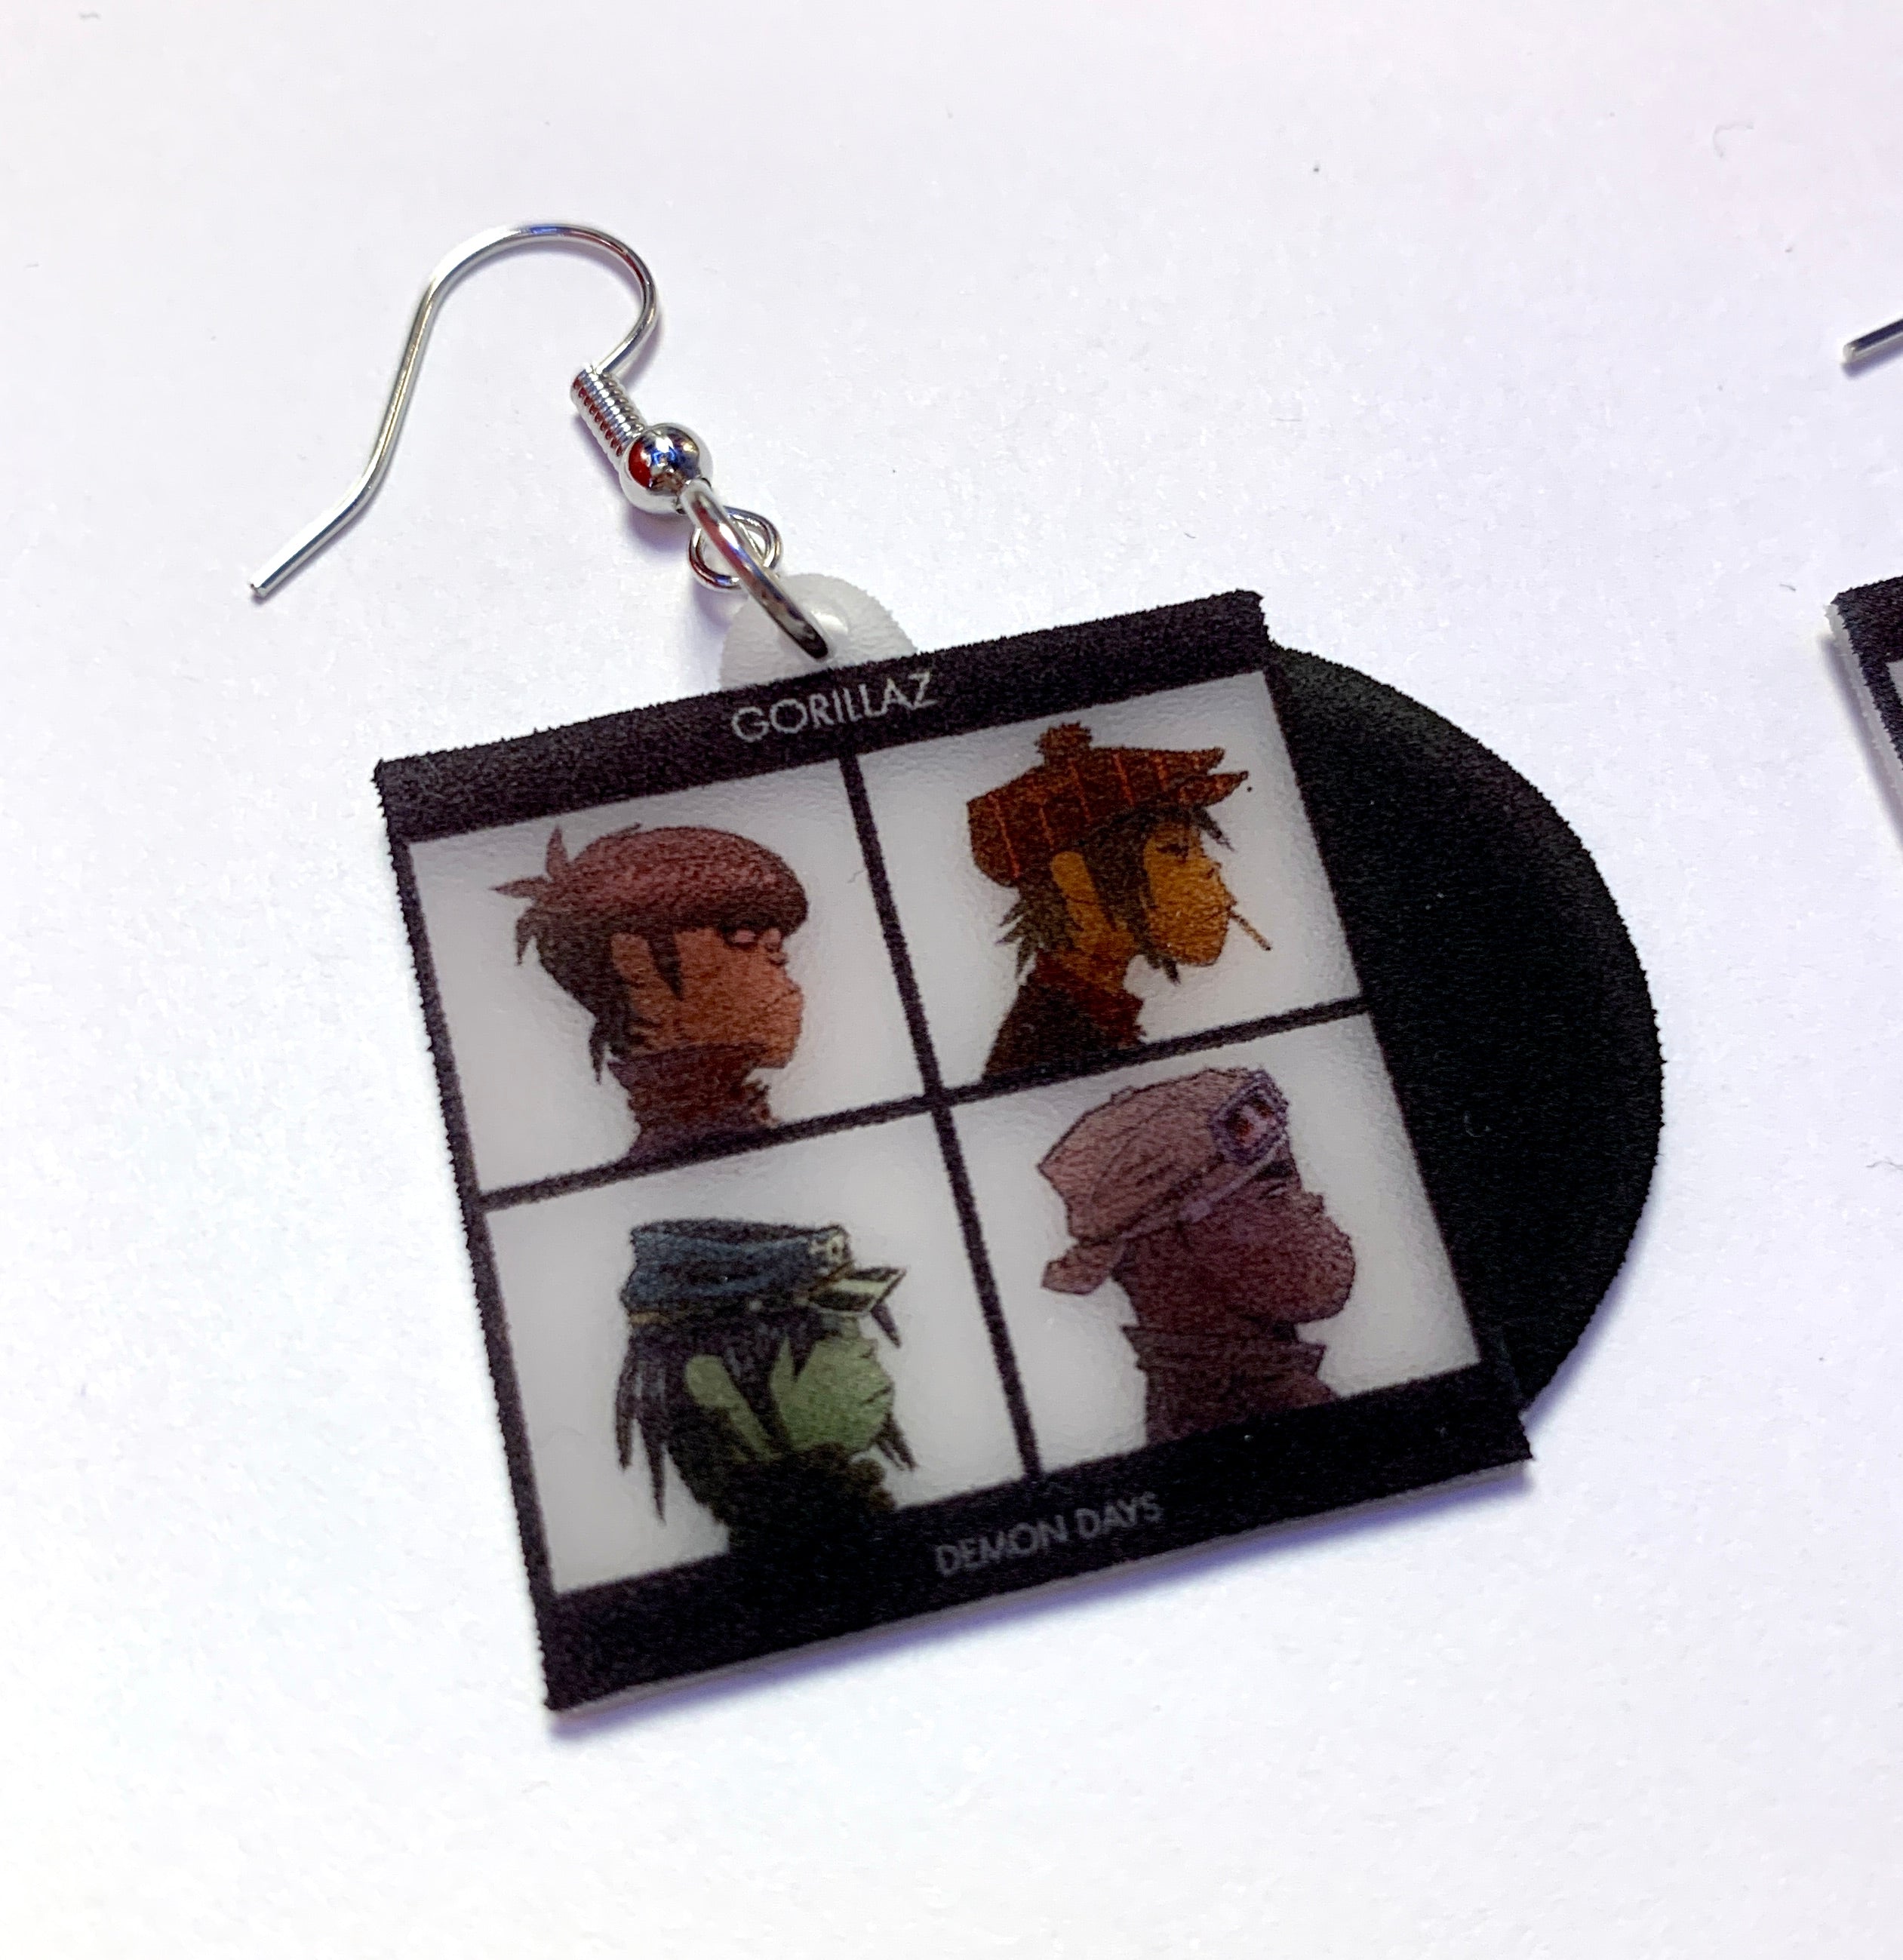 Gorillaz Demon Days Vinyl Album Handmade Earrings!